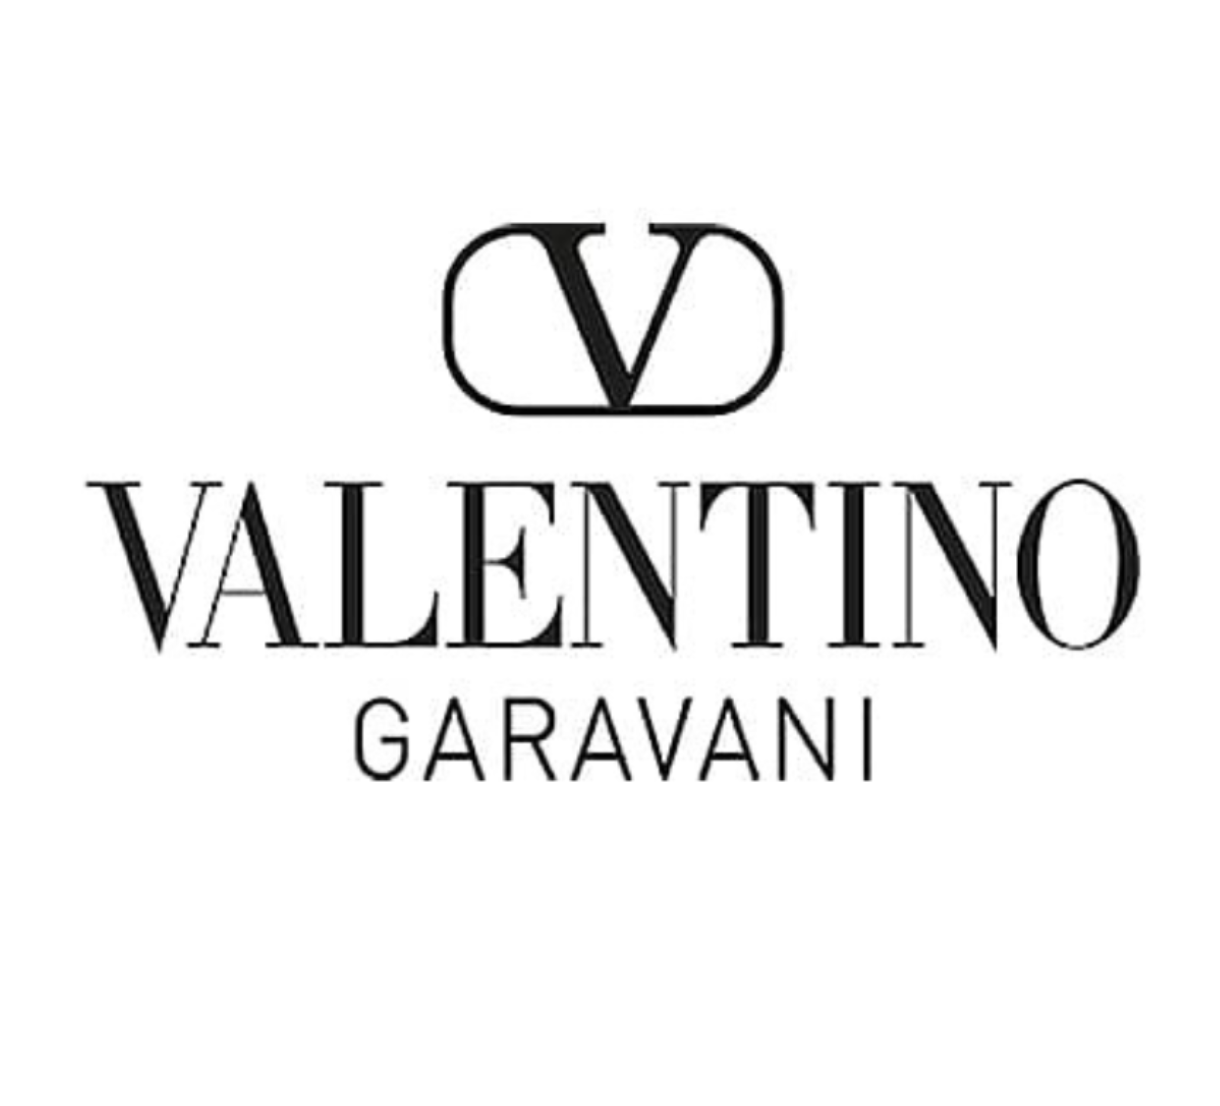 Valentino Garavani